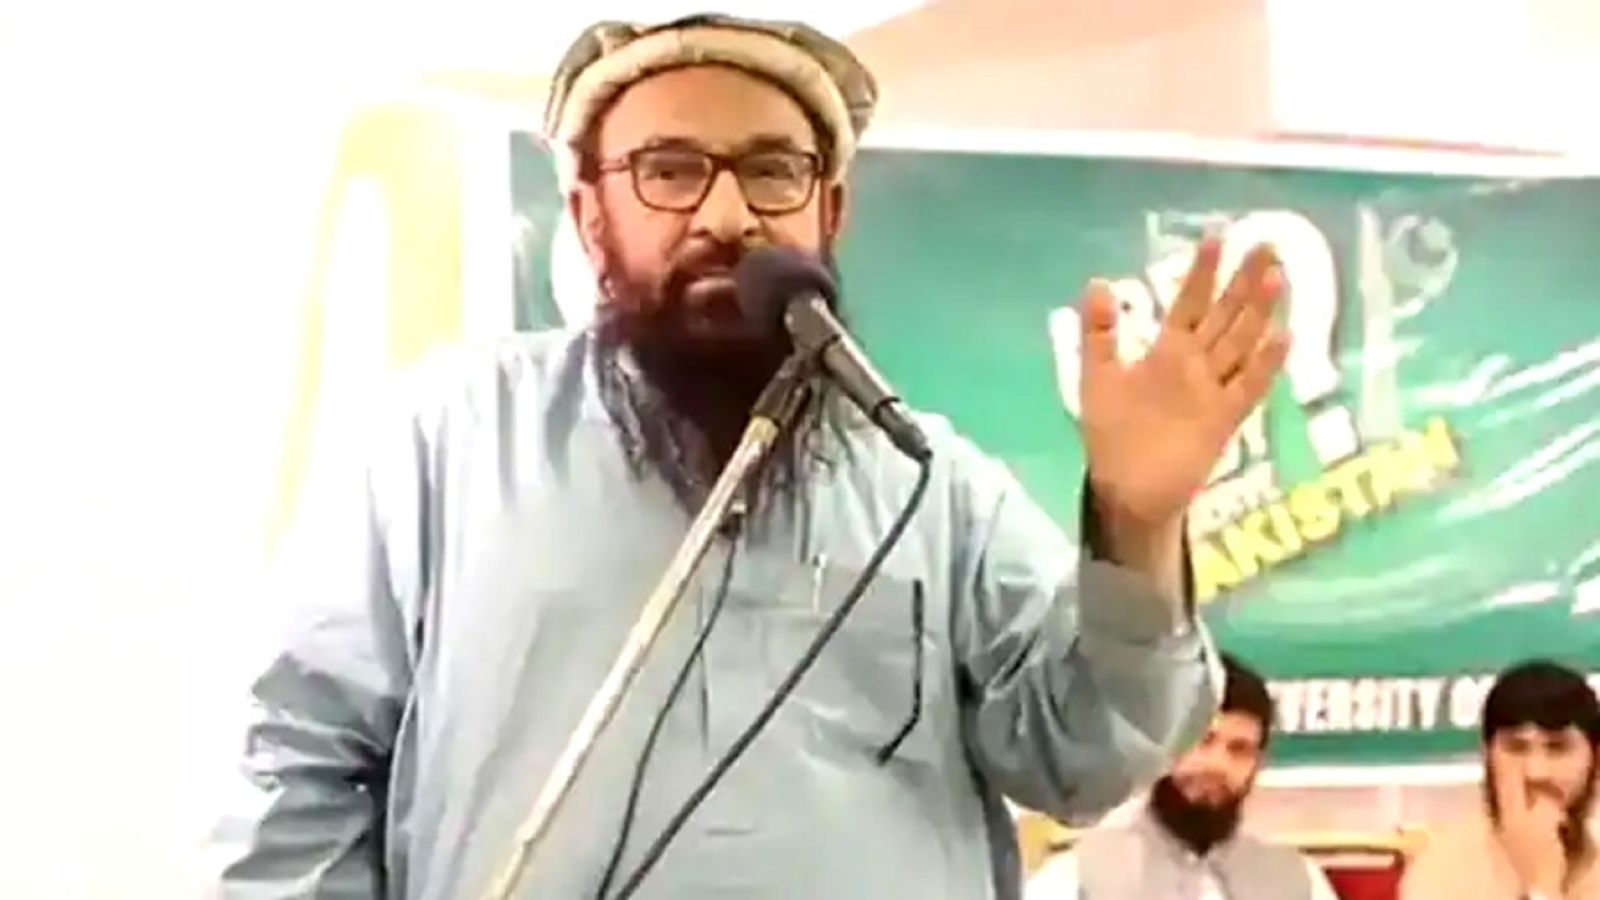 LeT's Abdul Rehman Makki releases video: ‘Never met Osama Bin Laden’